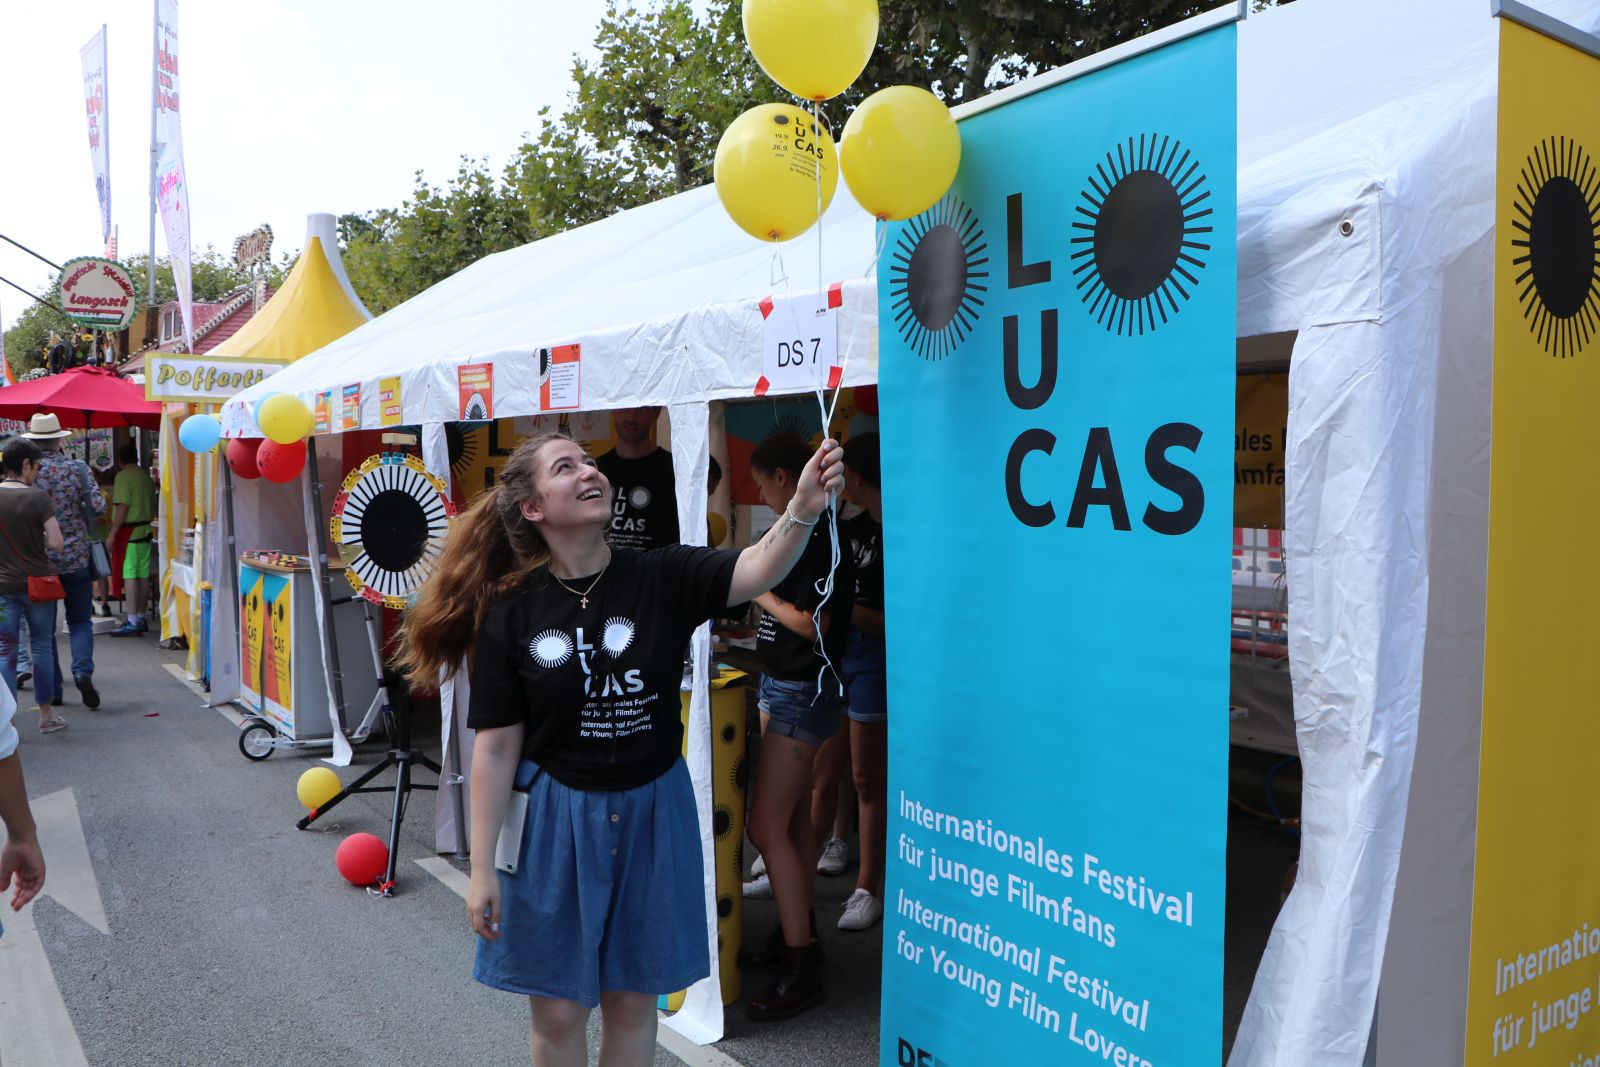 Festzelt von LUCAS - Internationales Festival für junge Filmfans während des Museumsuferfests.